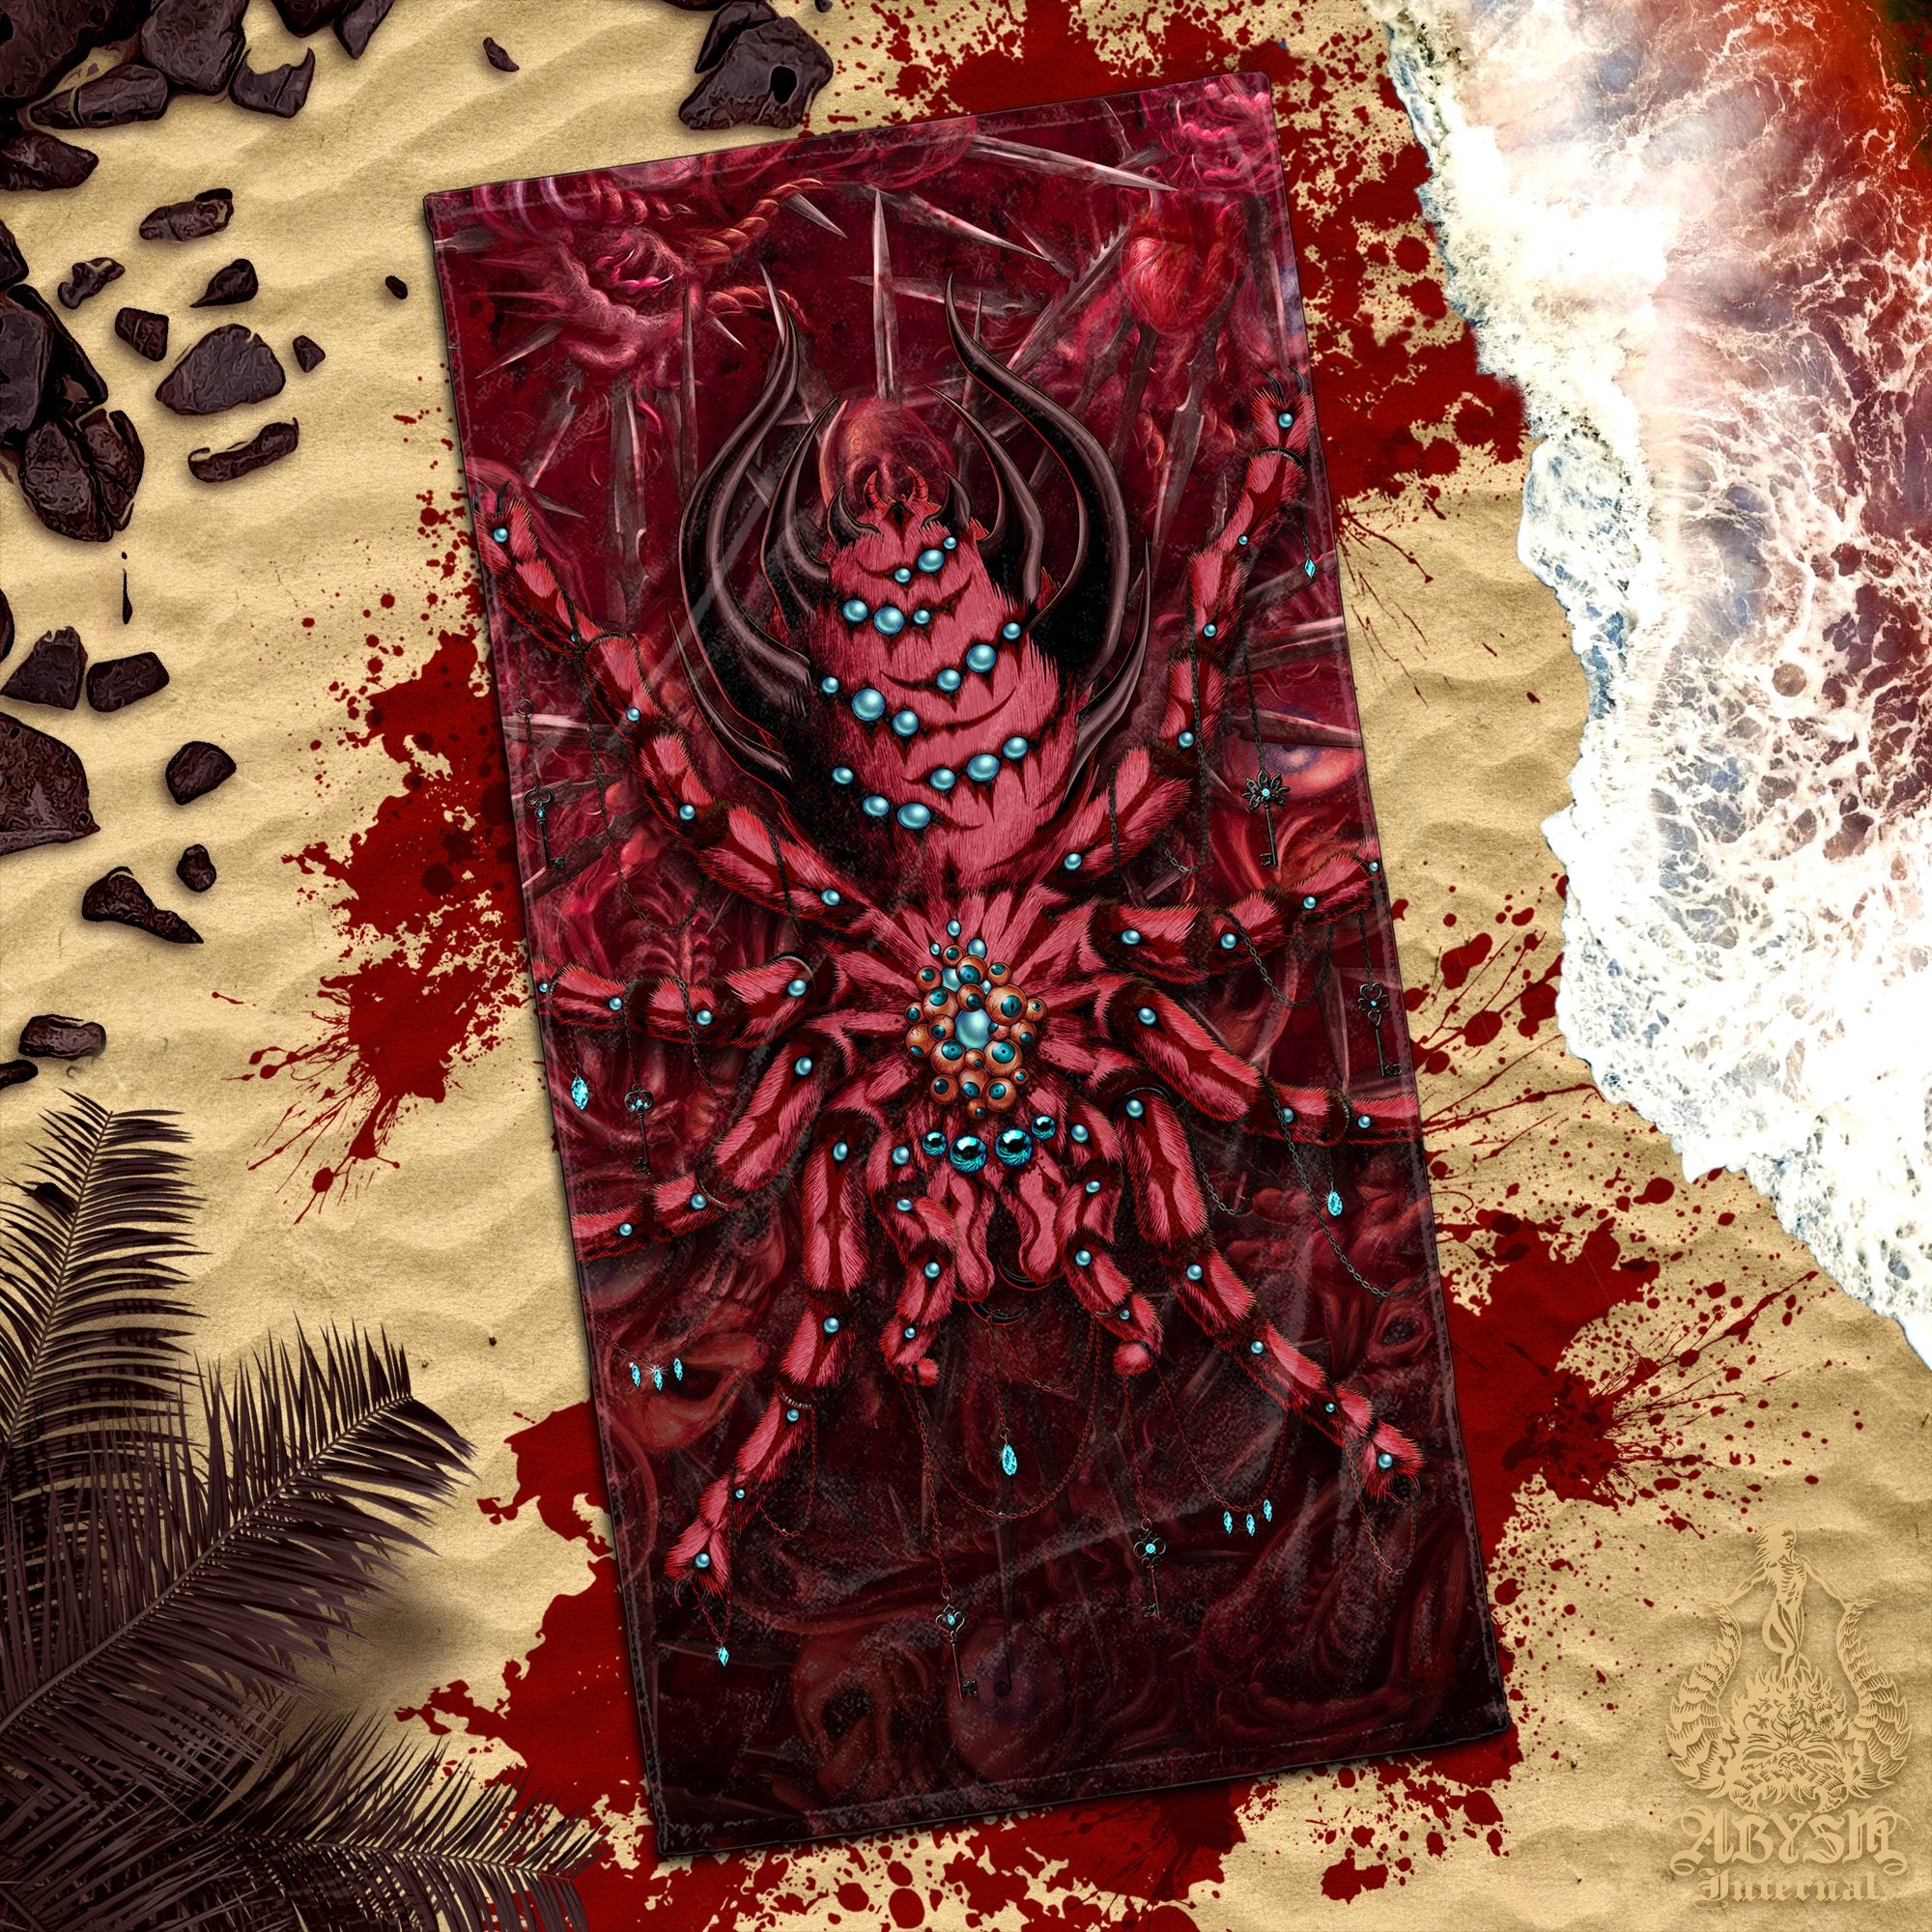 ALL Gore & Blood Beach Towel, Halloween Gift, Horror Art - Cross, Reaper, Medusa, Octopus, Spider, 8 Designs - Abysm Internal